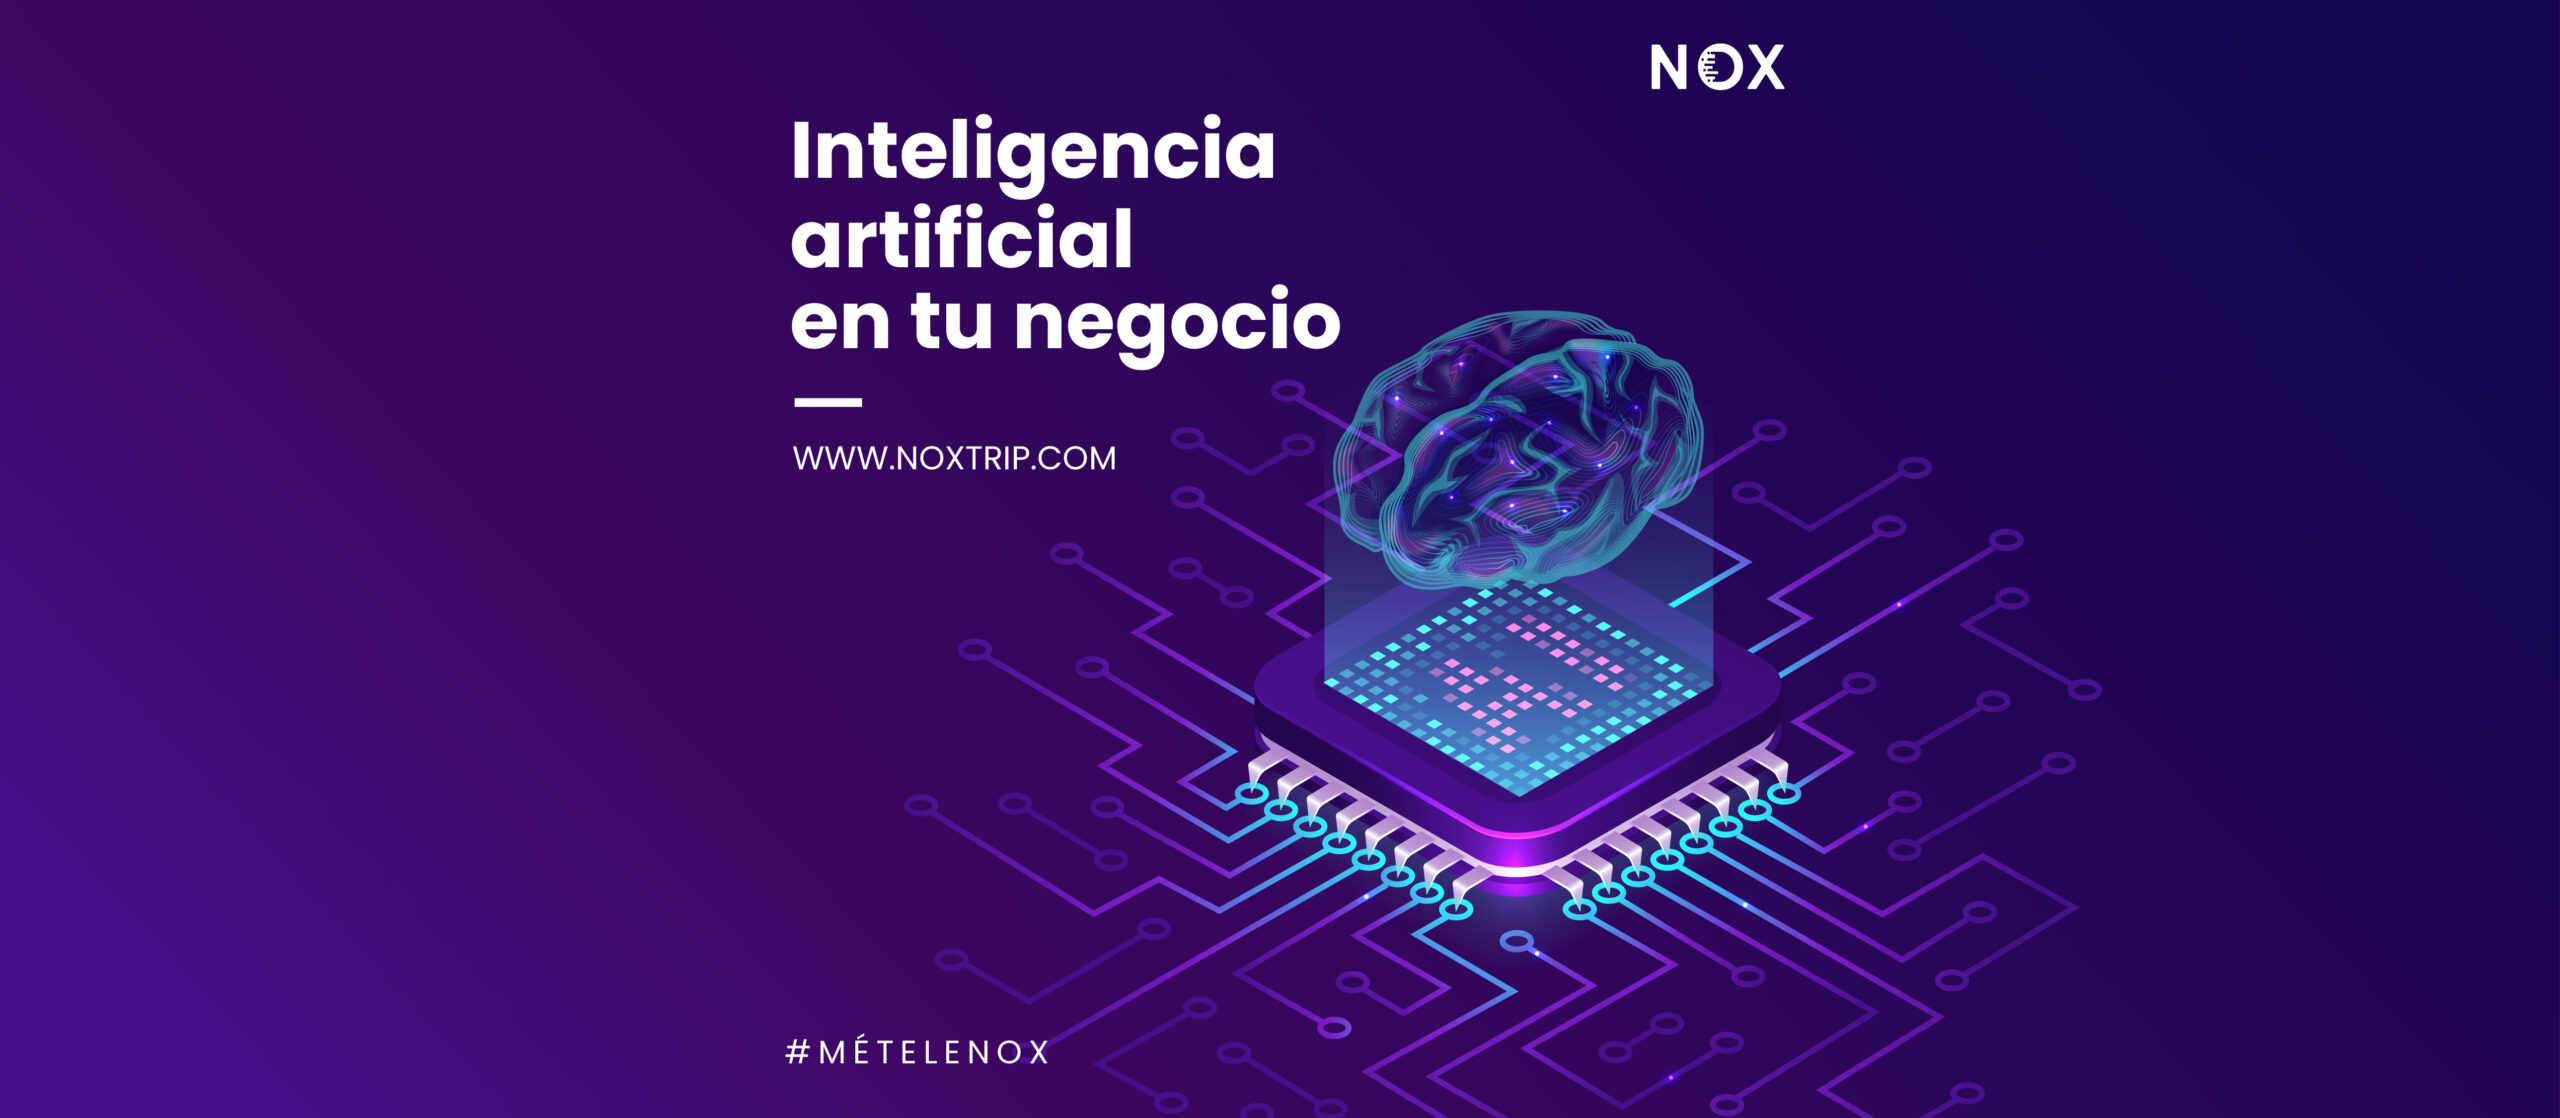 NOX Marketing Digital, Inteligencia artificial en tu negocio